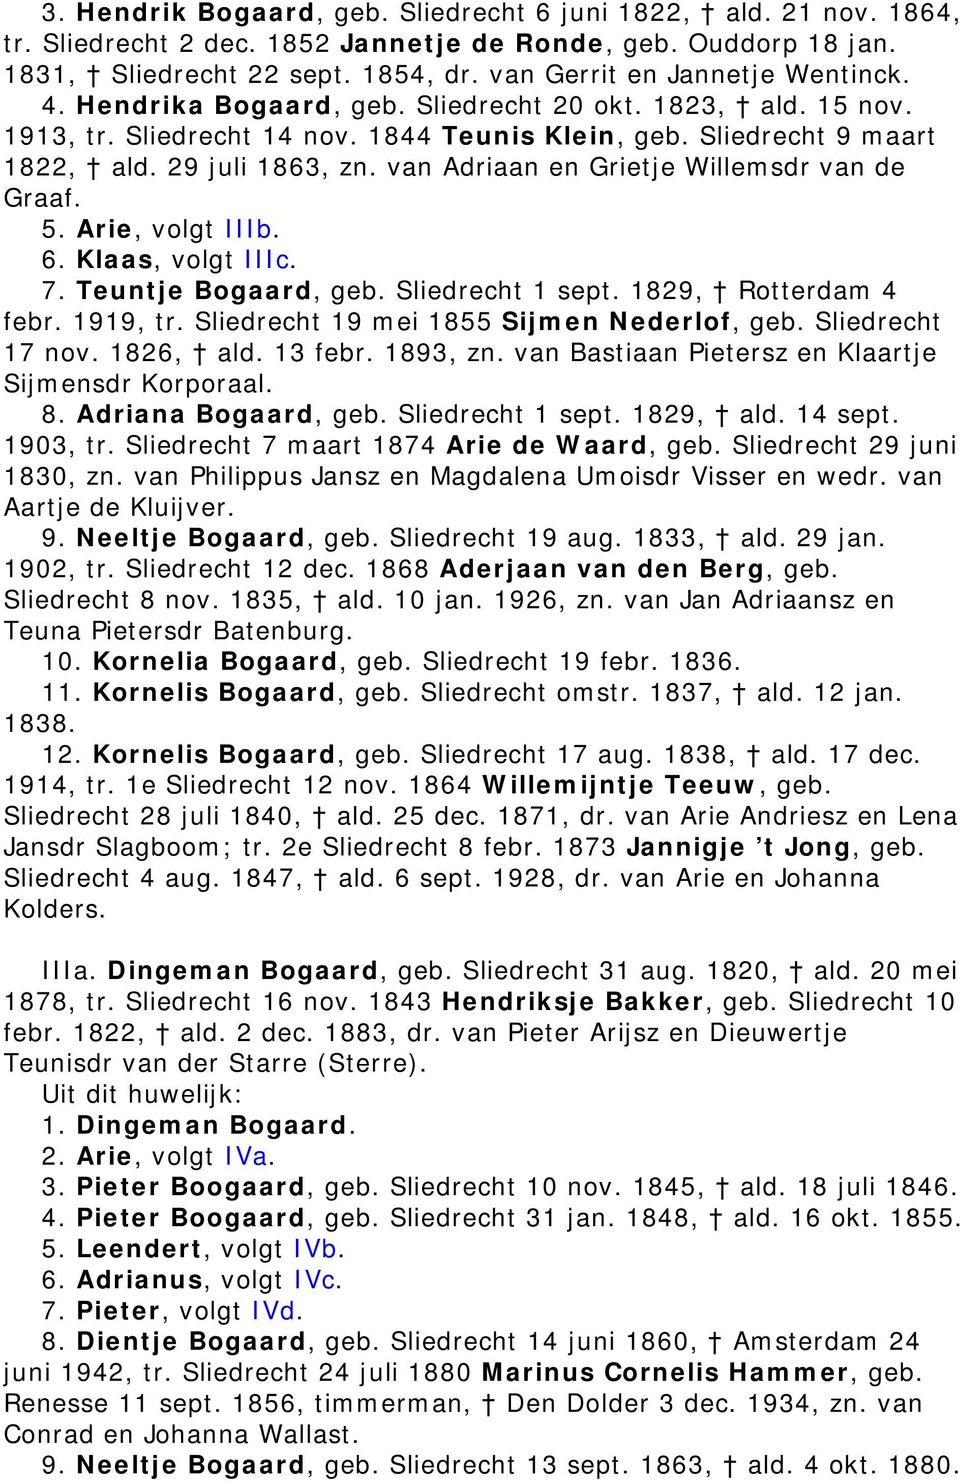 van Adriaan en Grietje Willemsdr van de Graaf. 5. Arie, volgt IIIb. 6. Klaas, volgt IIIc. 7. Teuntje Bogaard, geb. Sliedrecht 1 sept. 1829, Rotterdam 4 febr. 1919, tr.